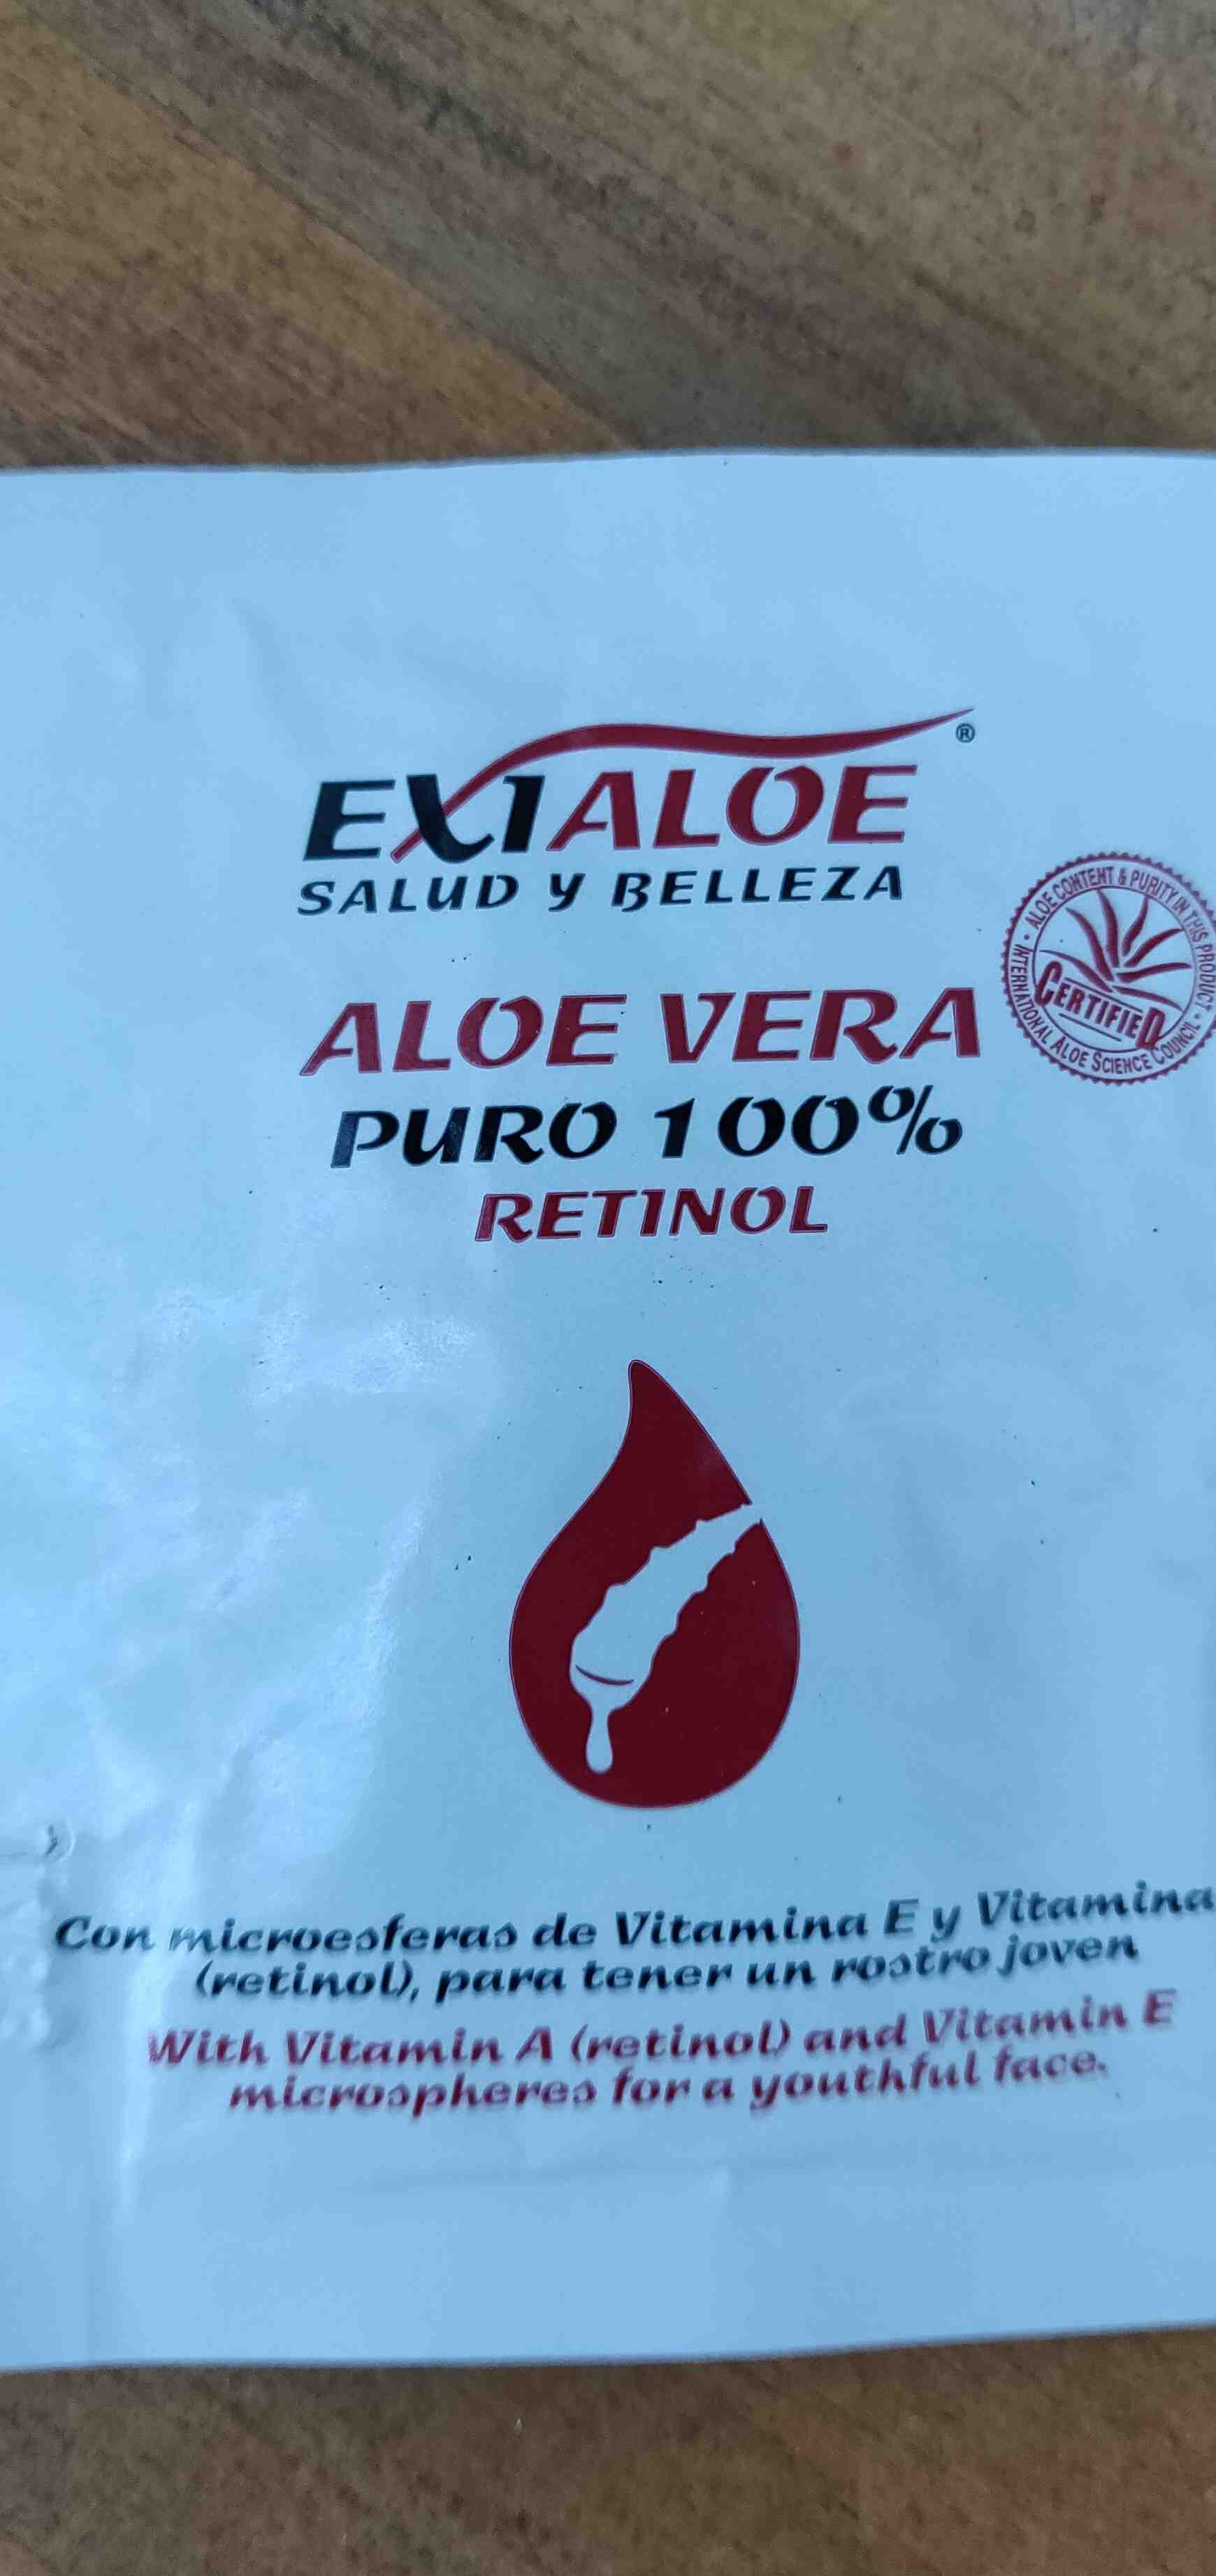 Aloe vera puro 100% retinol - Product - en